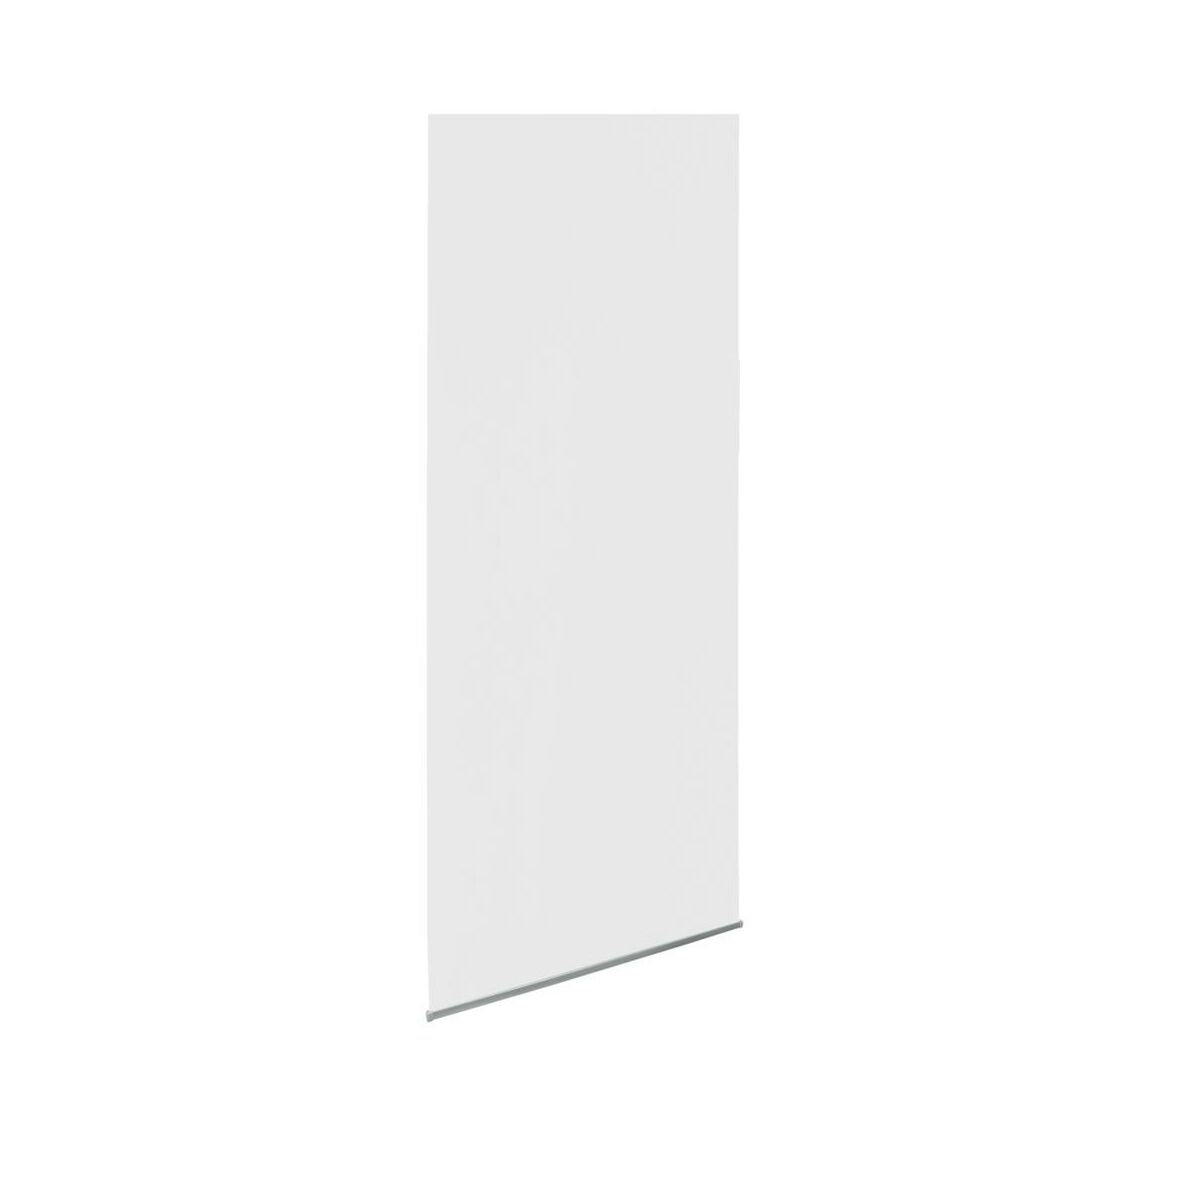 Tkanina na panel japoński Basic biała 60 x 275 cm